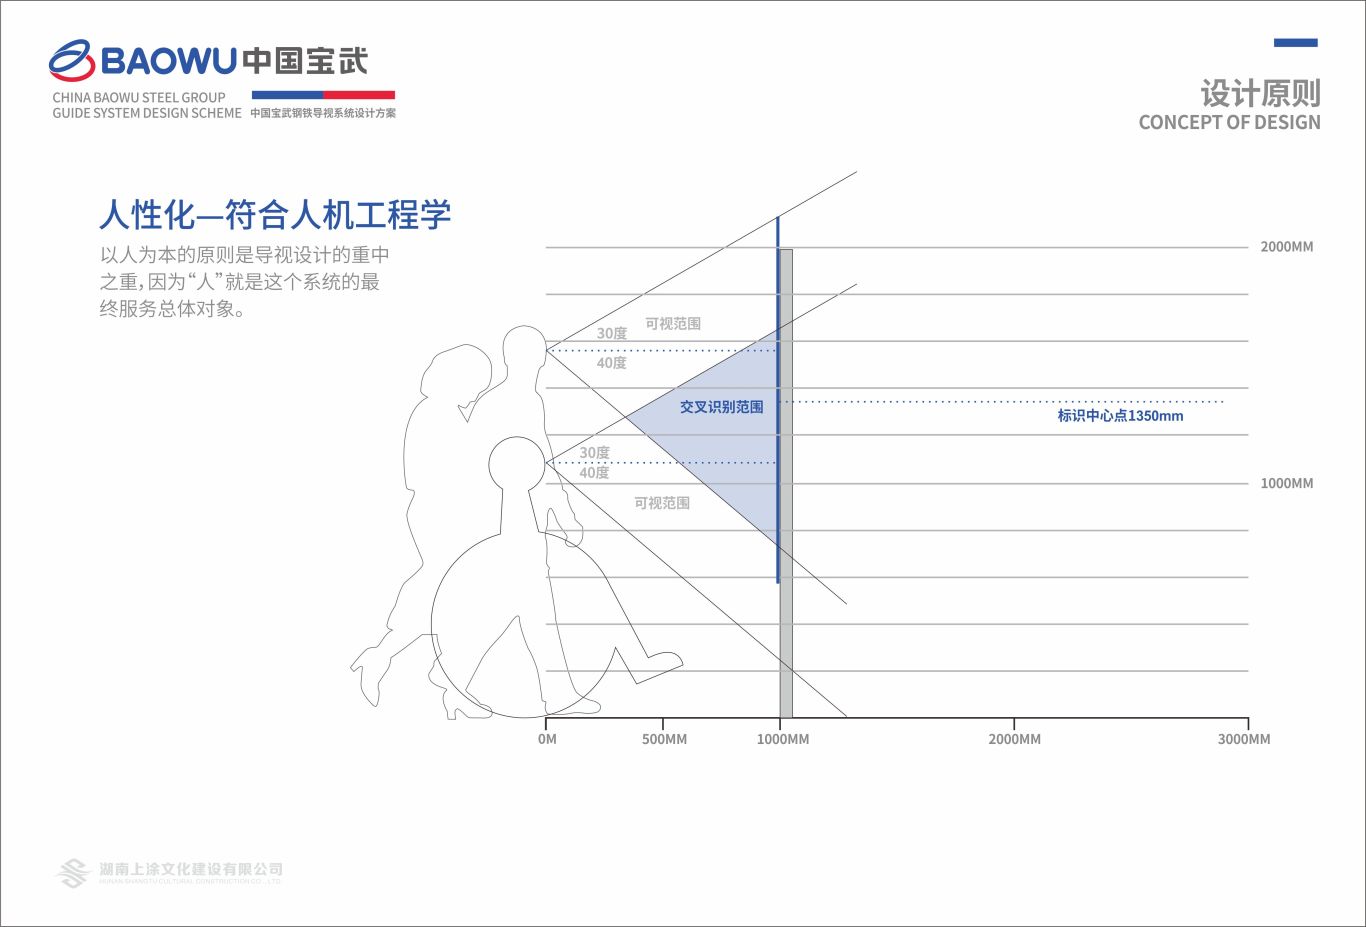 武宝钢铁集团导视系统设计图5